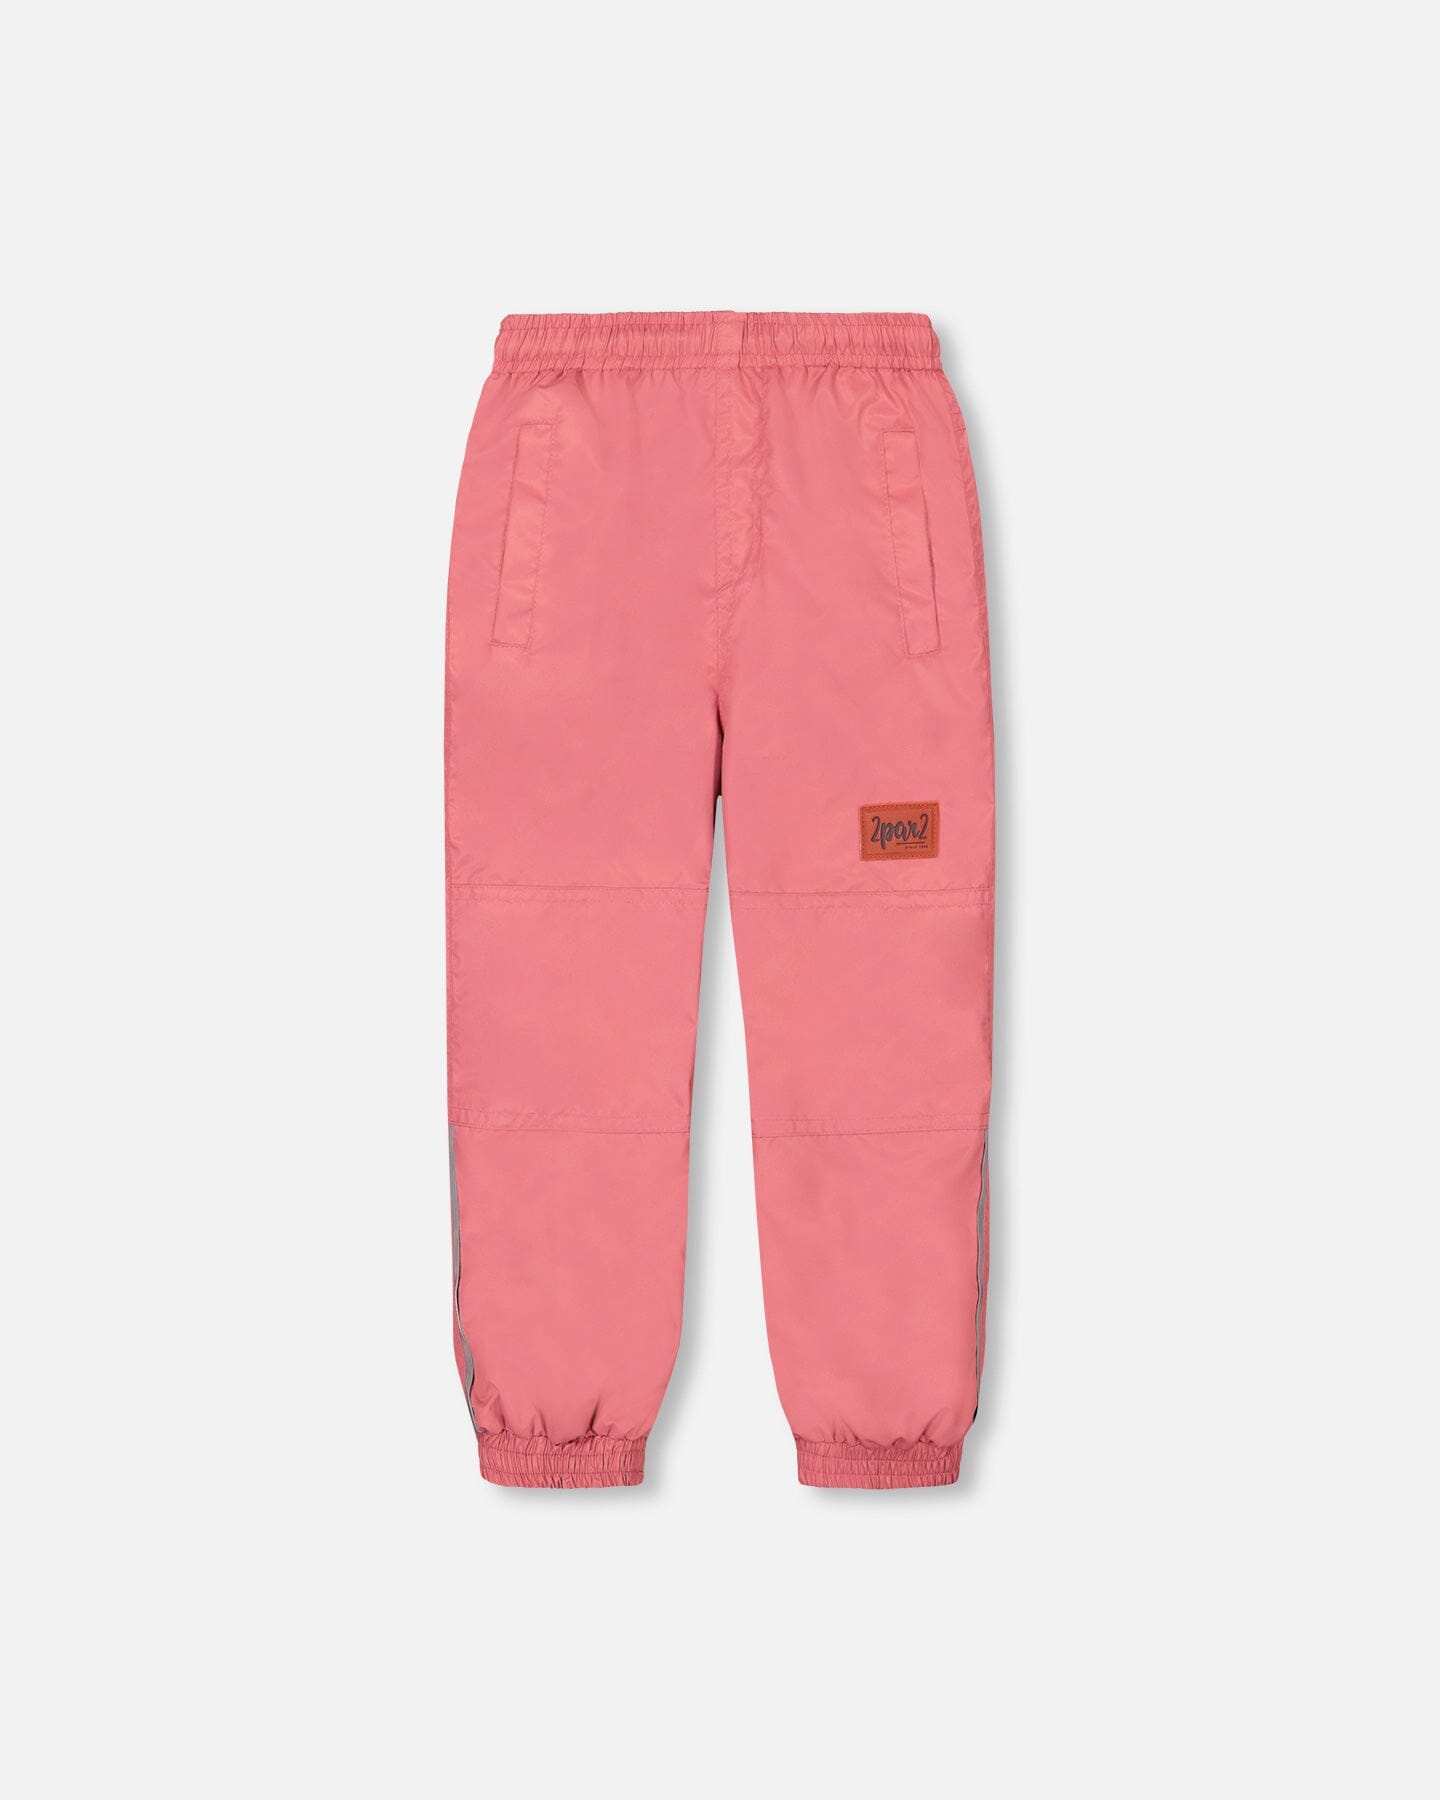 Two Piece Printed Coat And Pant Mid-Season Set Pink Little Flowers Print Outerwear Deux par Deux 